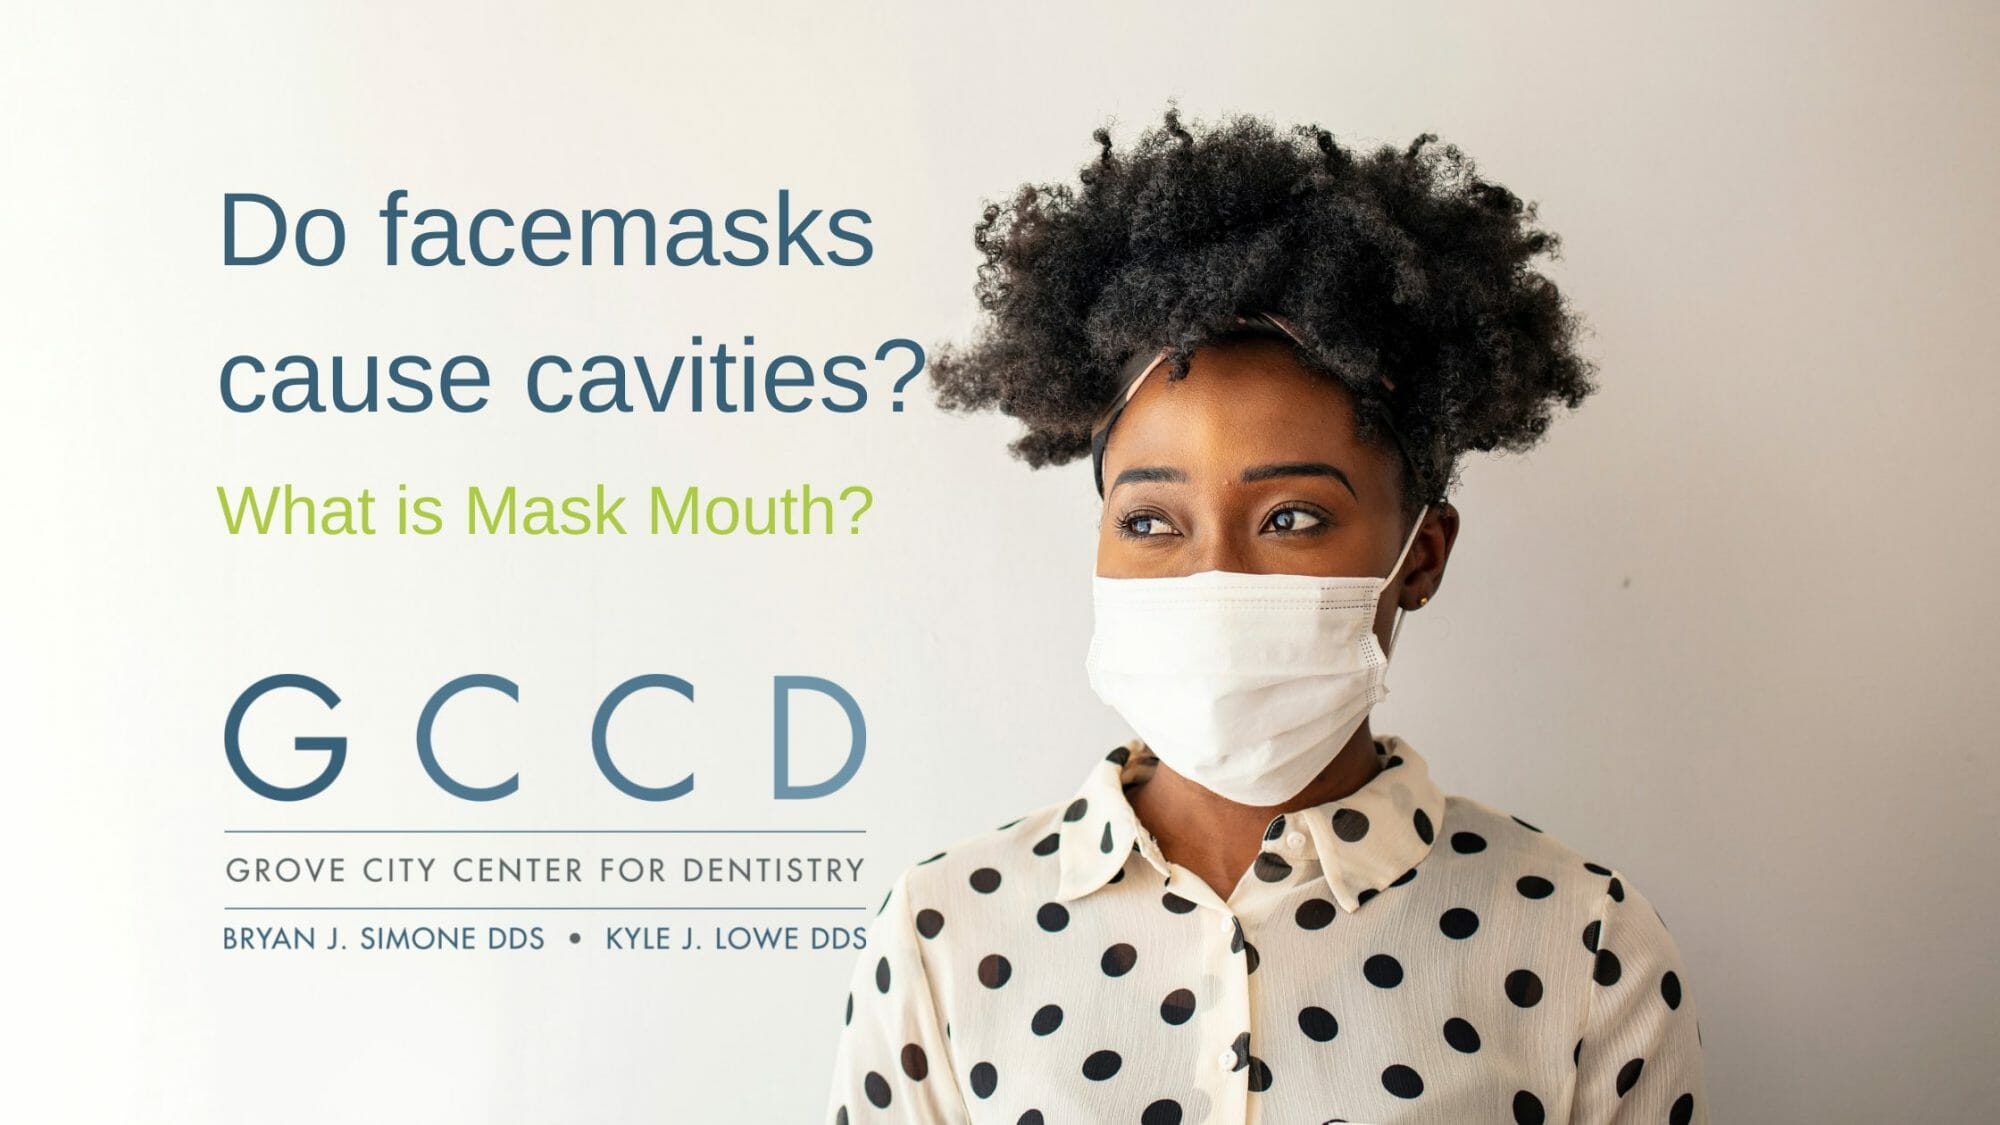 Do facemasks cause cavities